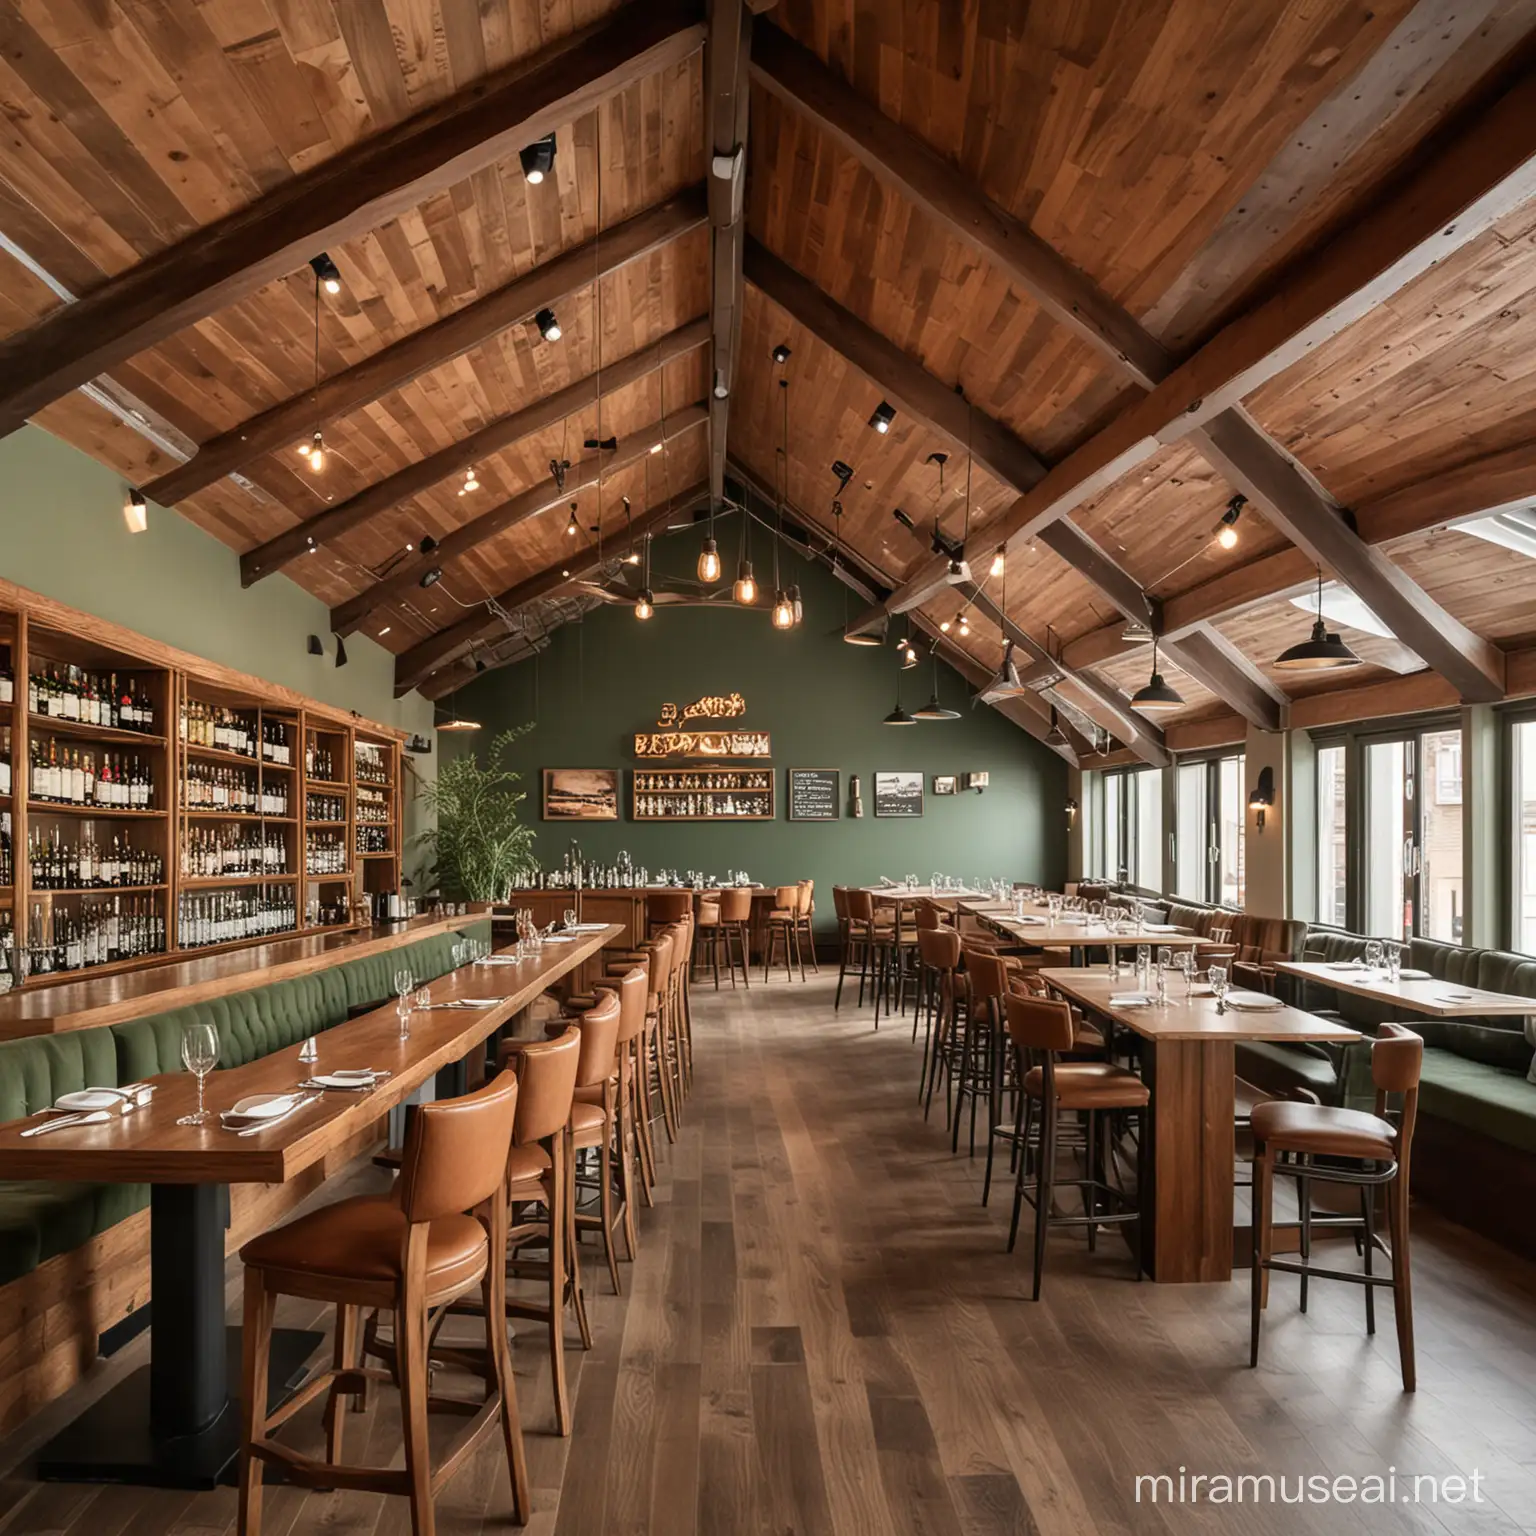 Çatı katında, tavanının ahşap olduğu, içerisindeki mobilyaların haki yeşil ve kahverengi tonlarında olduğu, içerisinde geniş bir bar olan, restoran tasarla